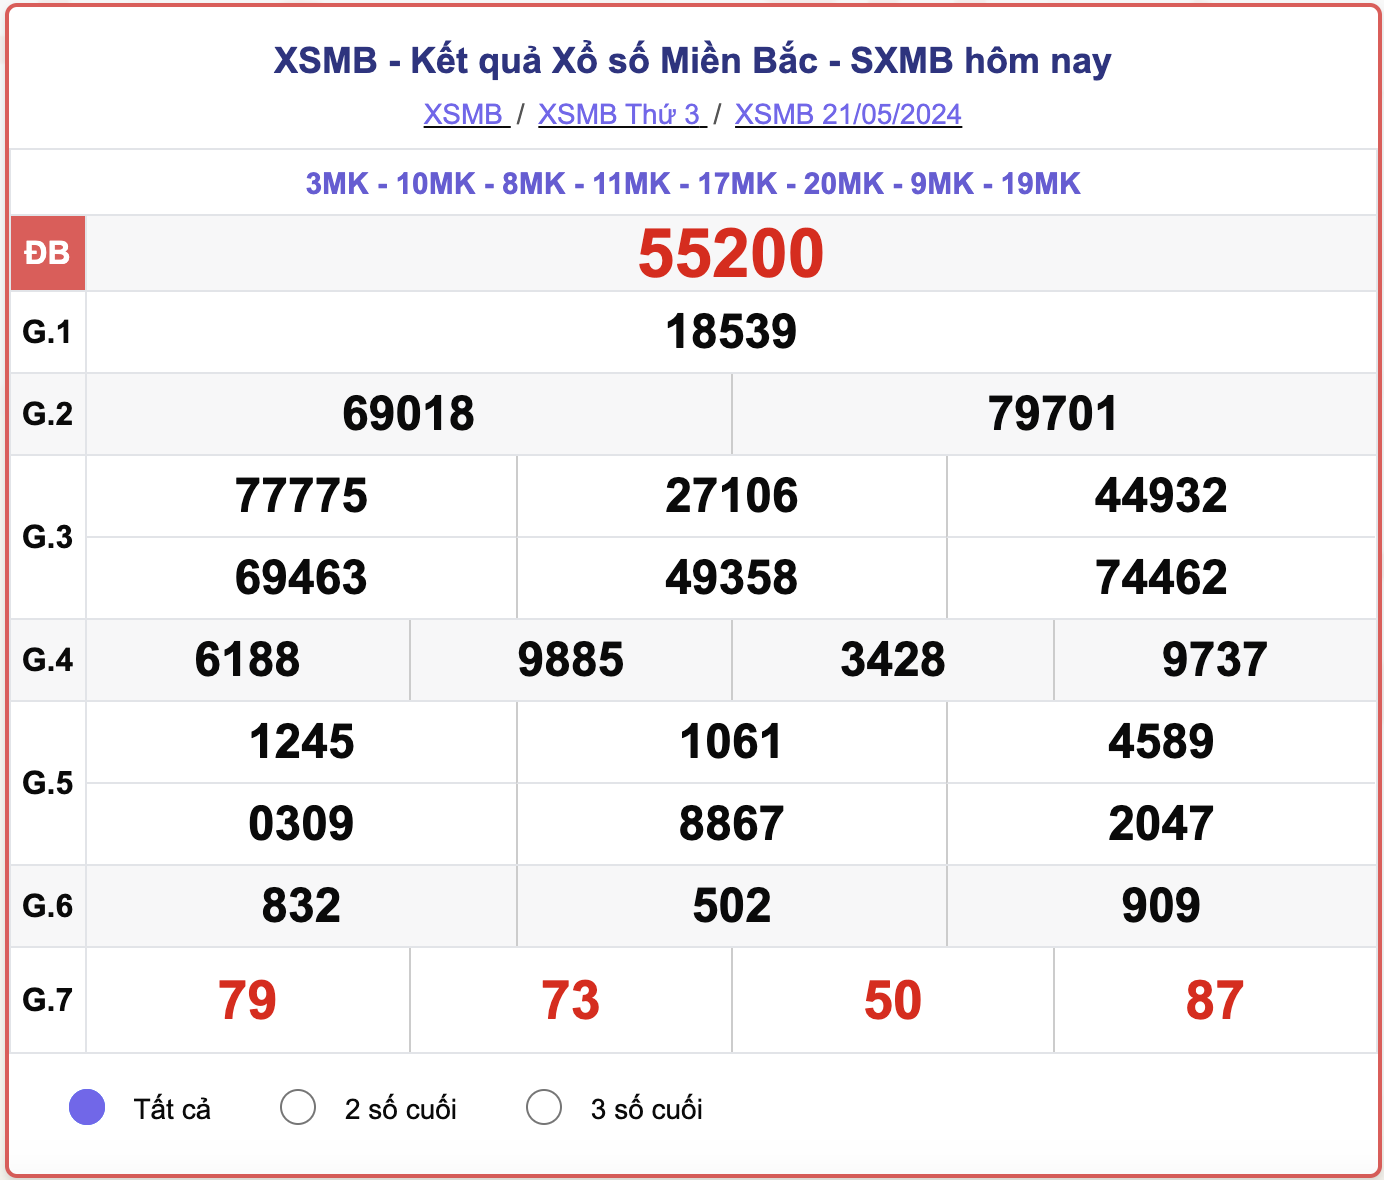 XSMB 26/5 - Kết quả xổ số miền Bắc hôm nay 26/5/2024 - KQXSMB ngày 26/5- Ảnh 6.